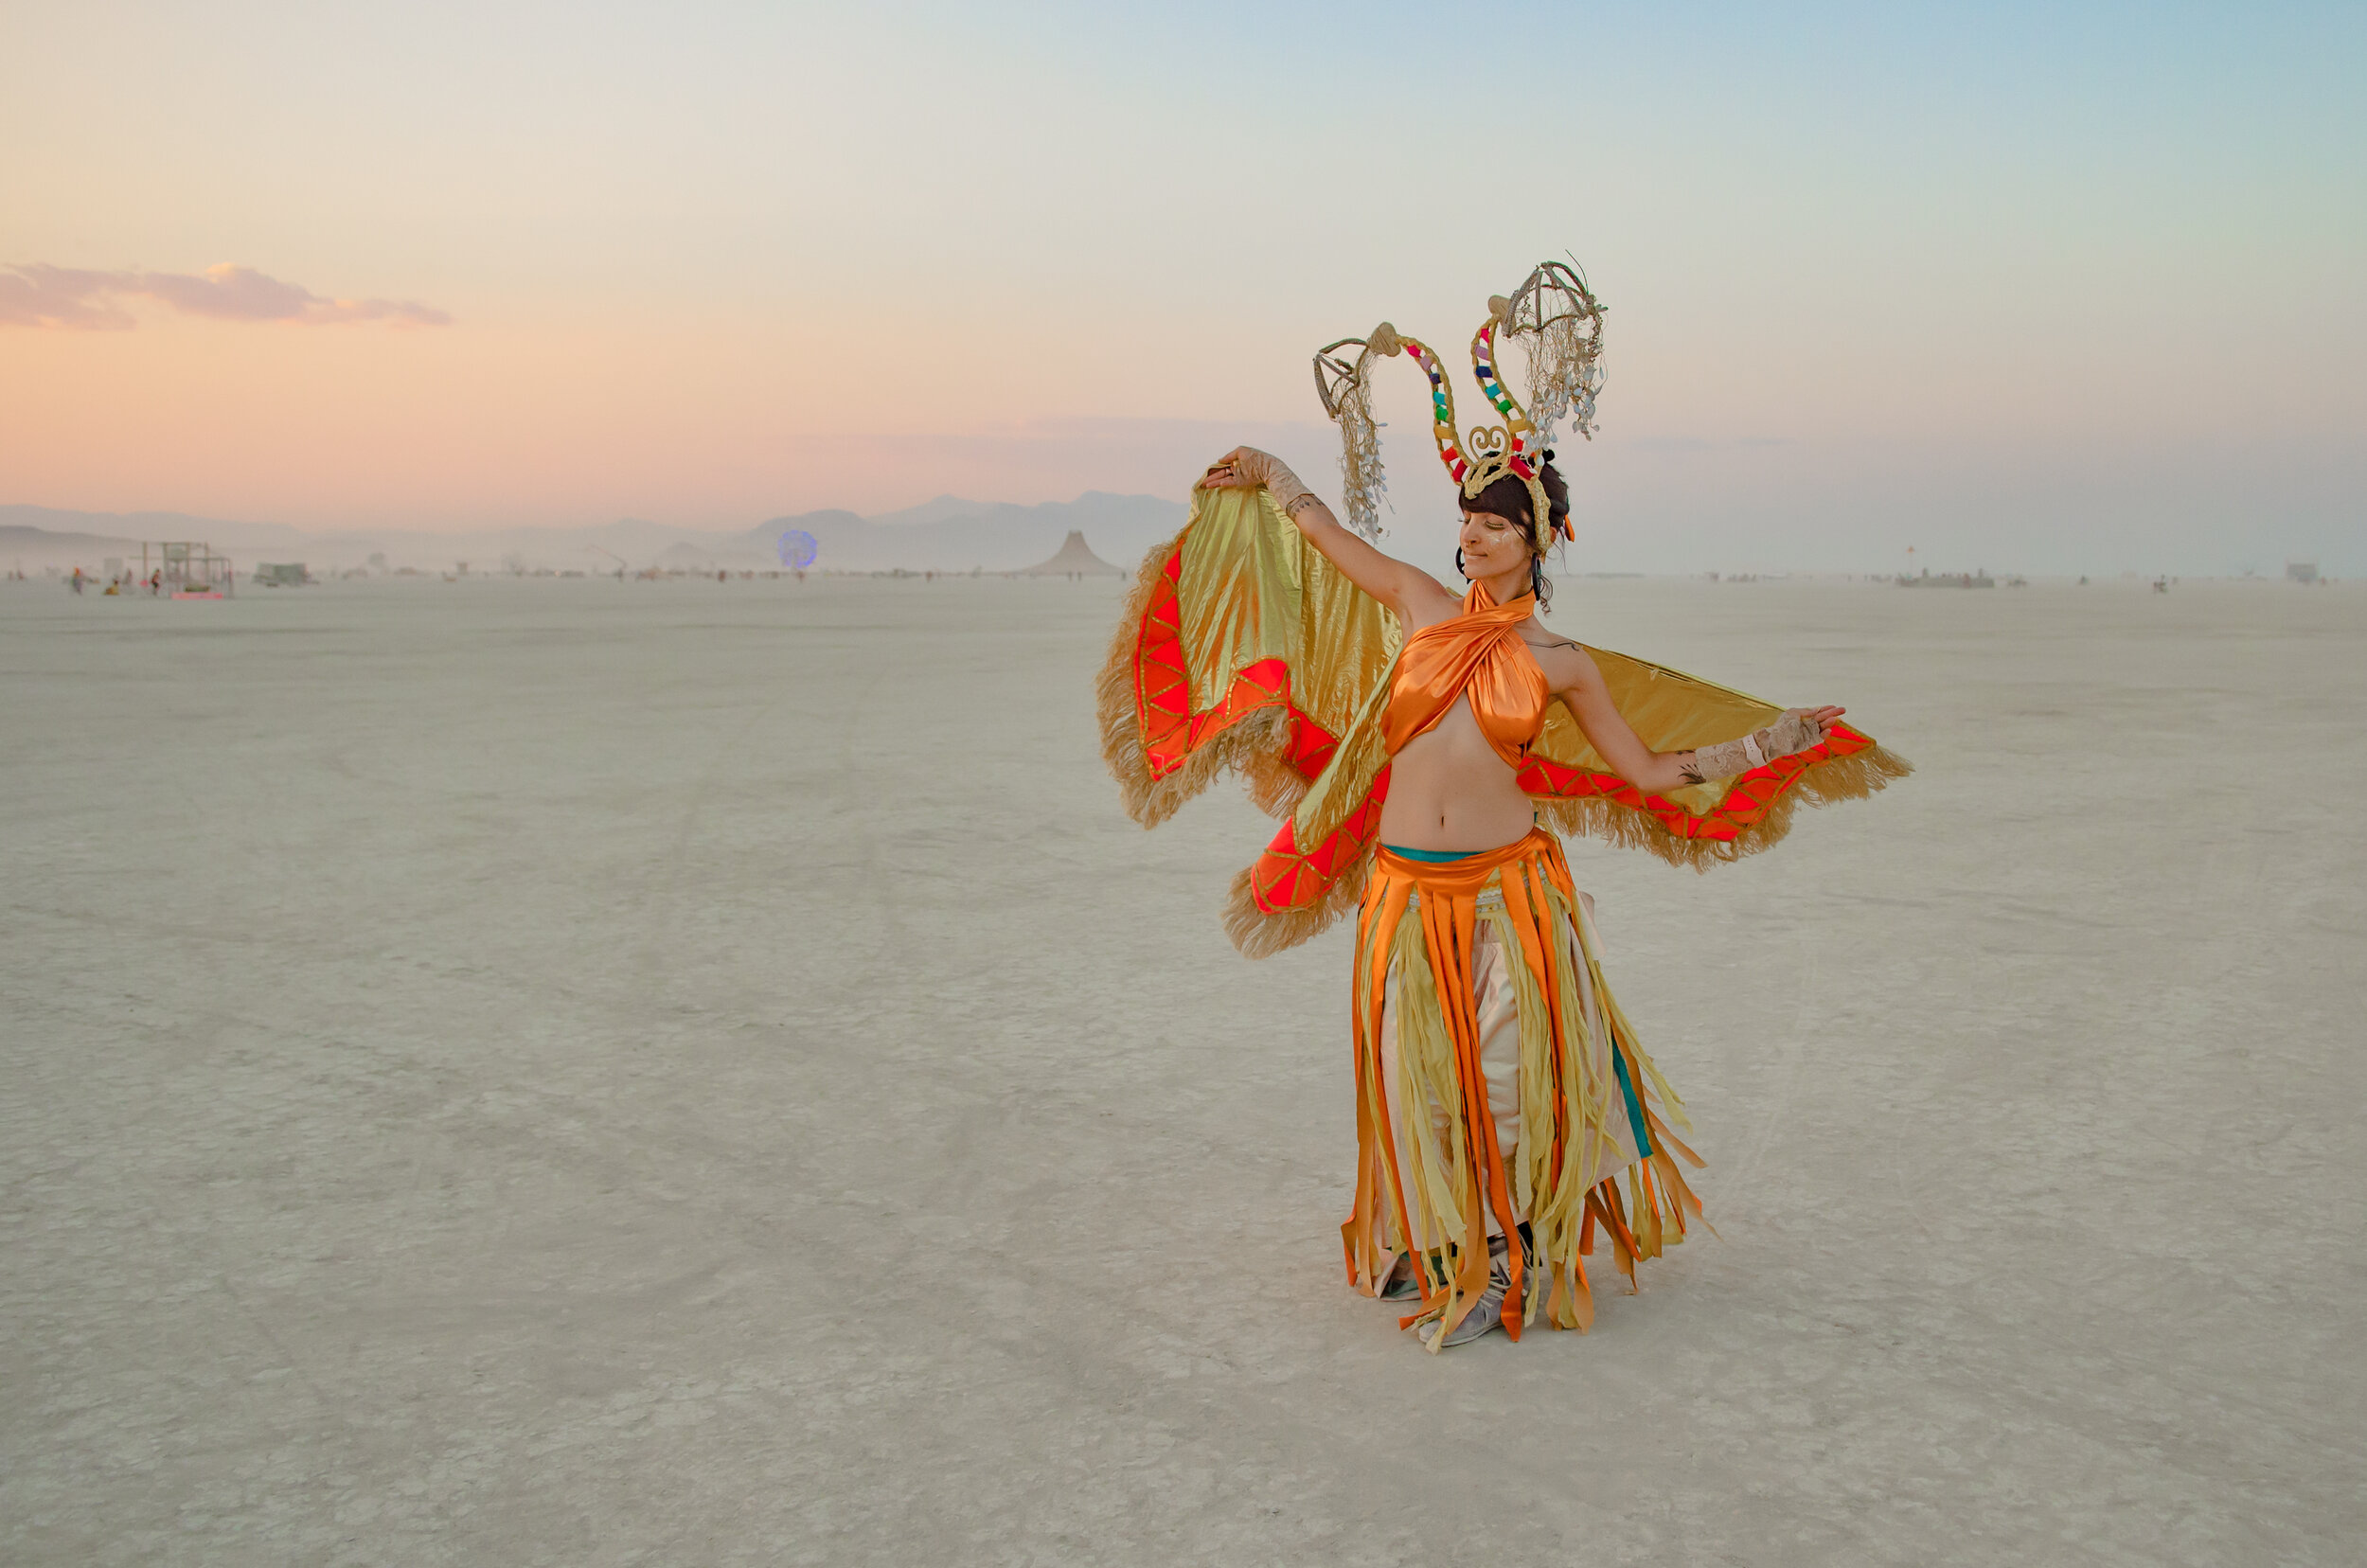 Burning Man 2018 - Playa Dancer